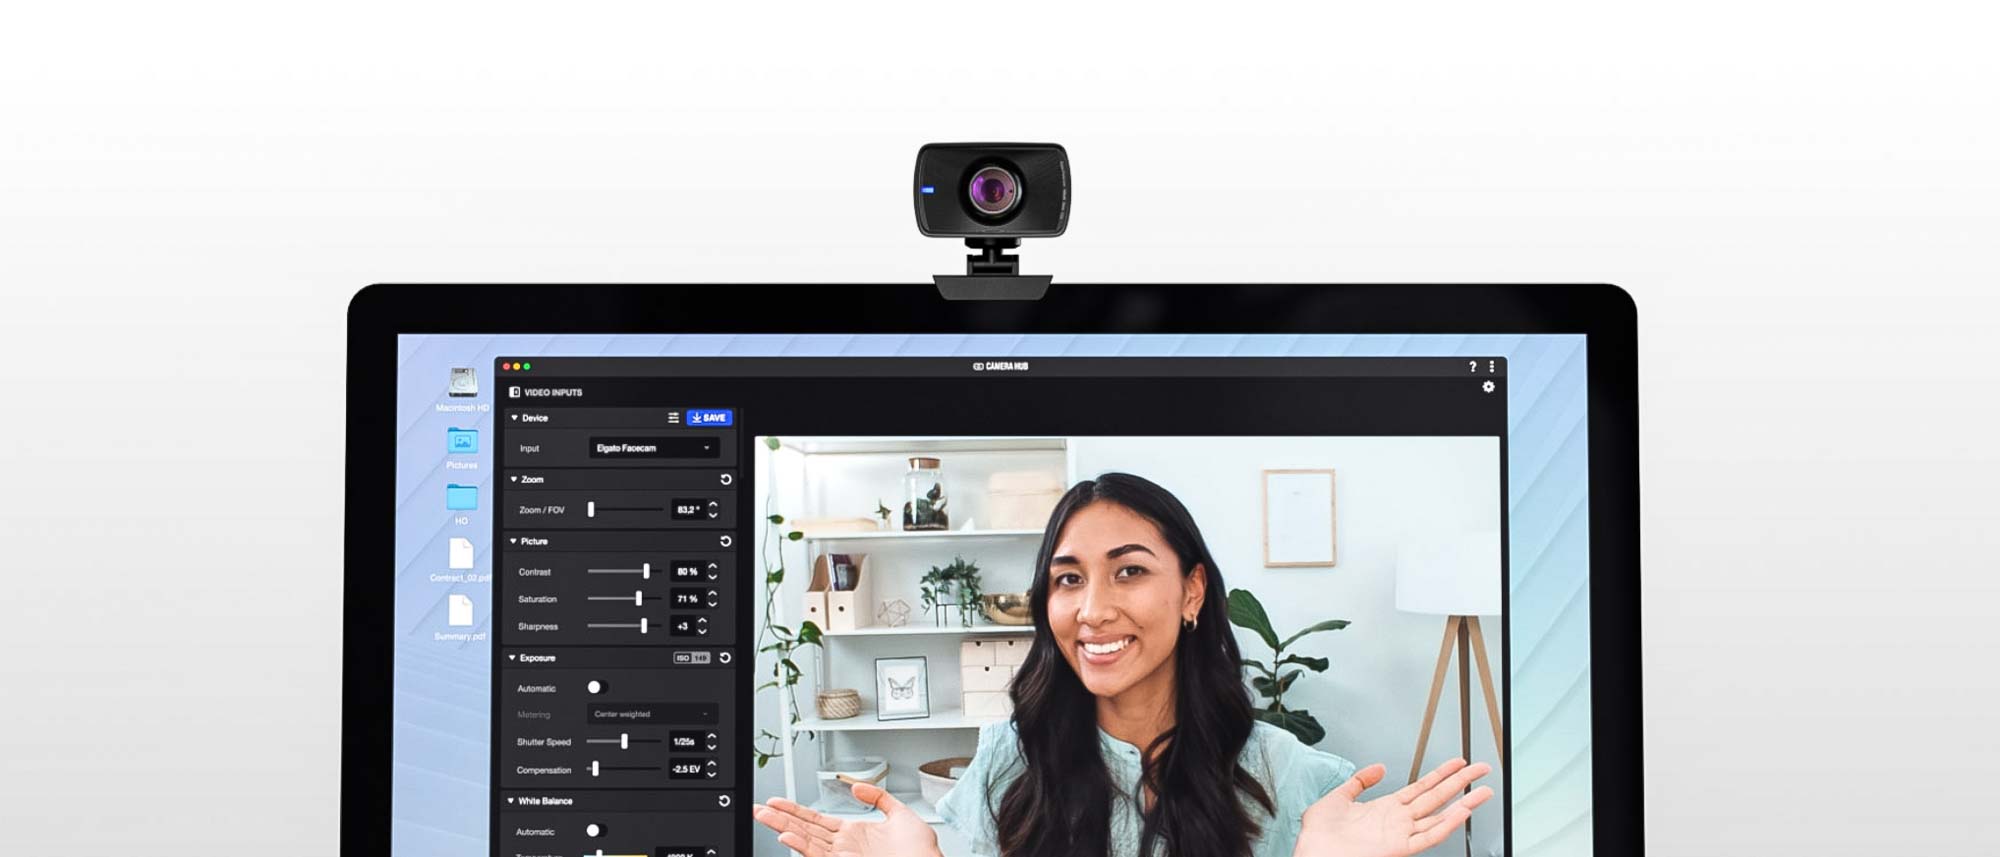 Best Webcam 2022? Elgato Facecam Review